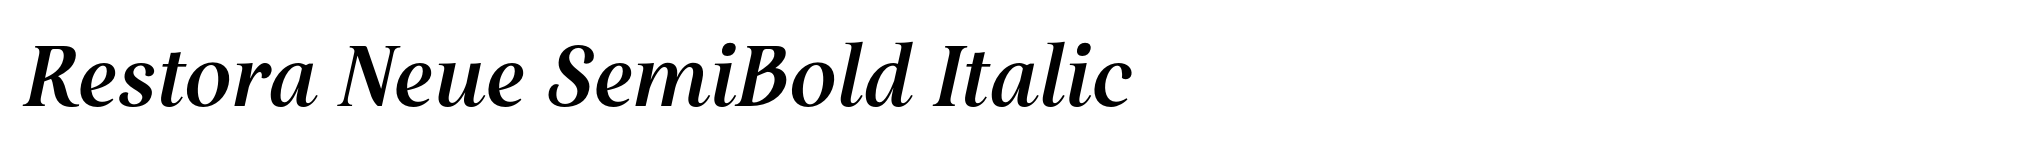 Restora Neue SemiBold Italic image